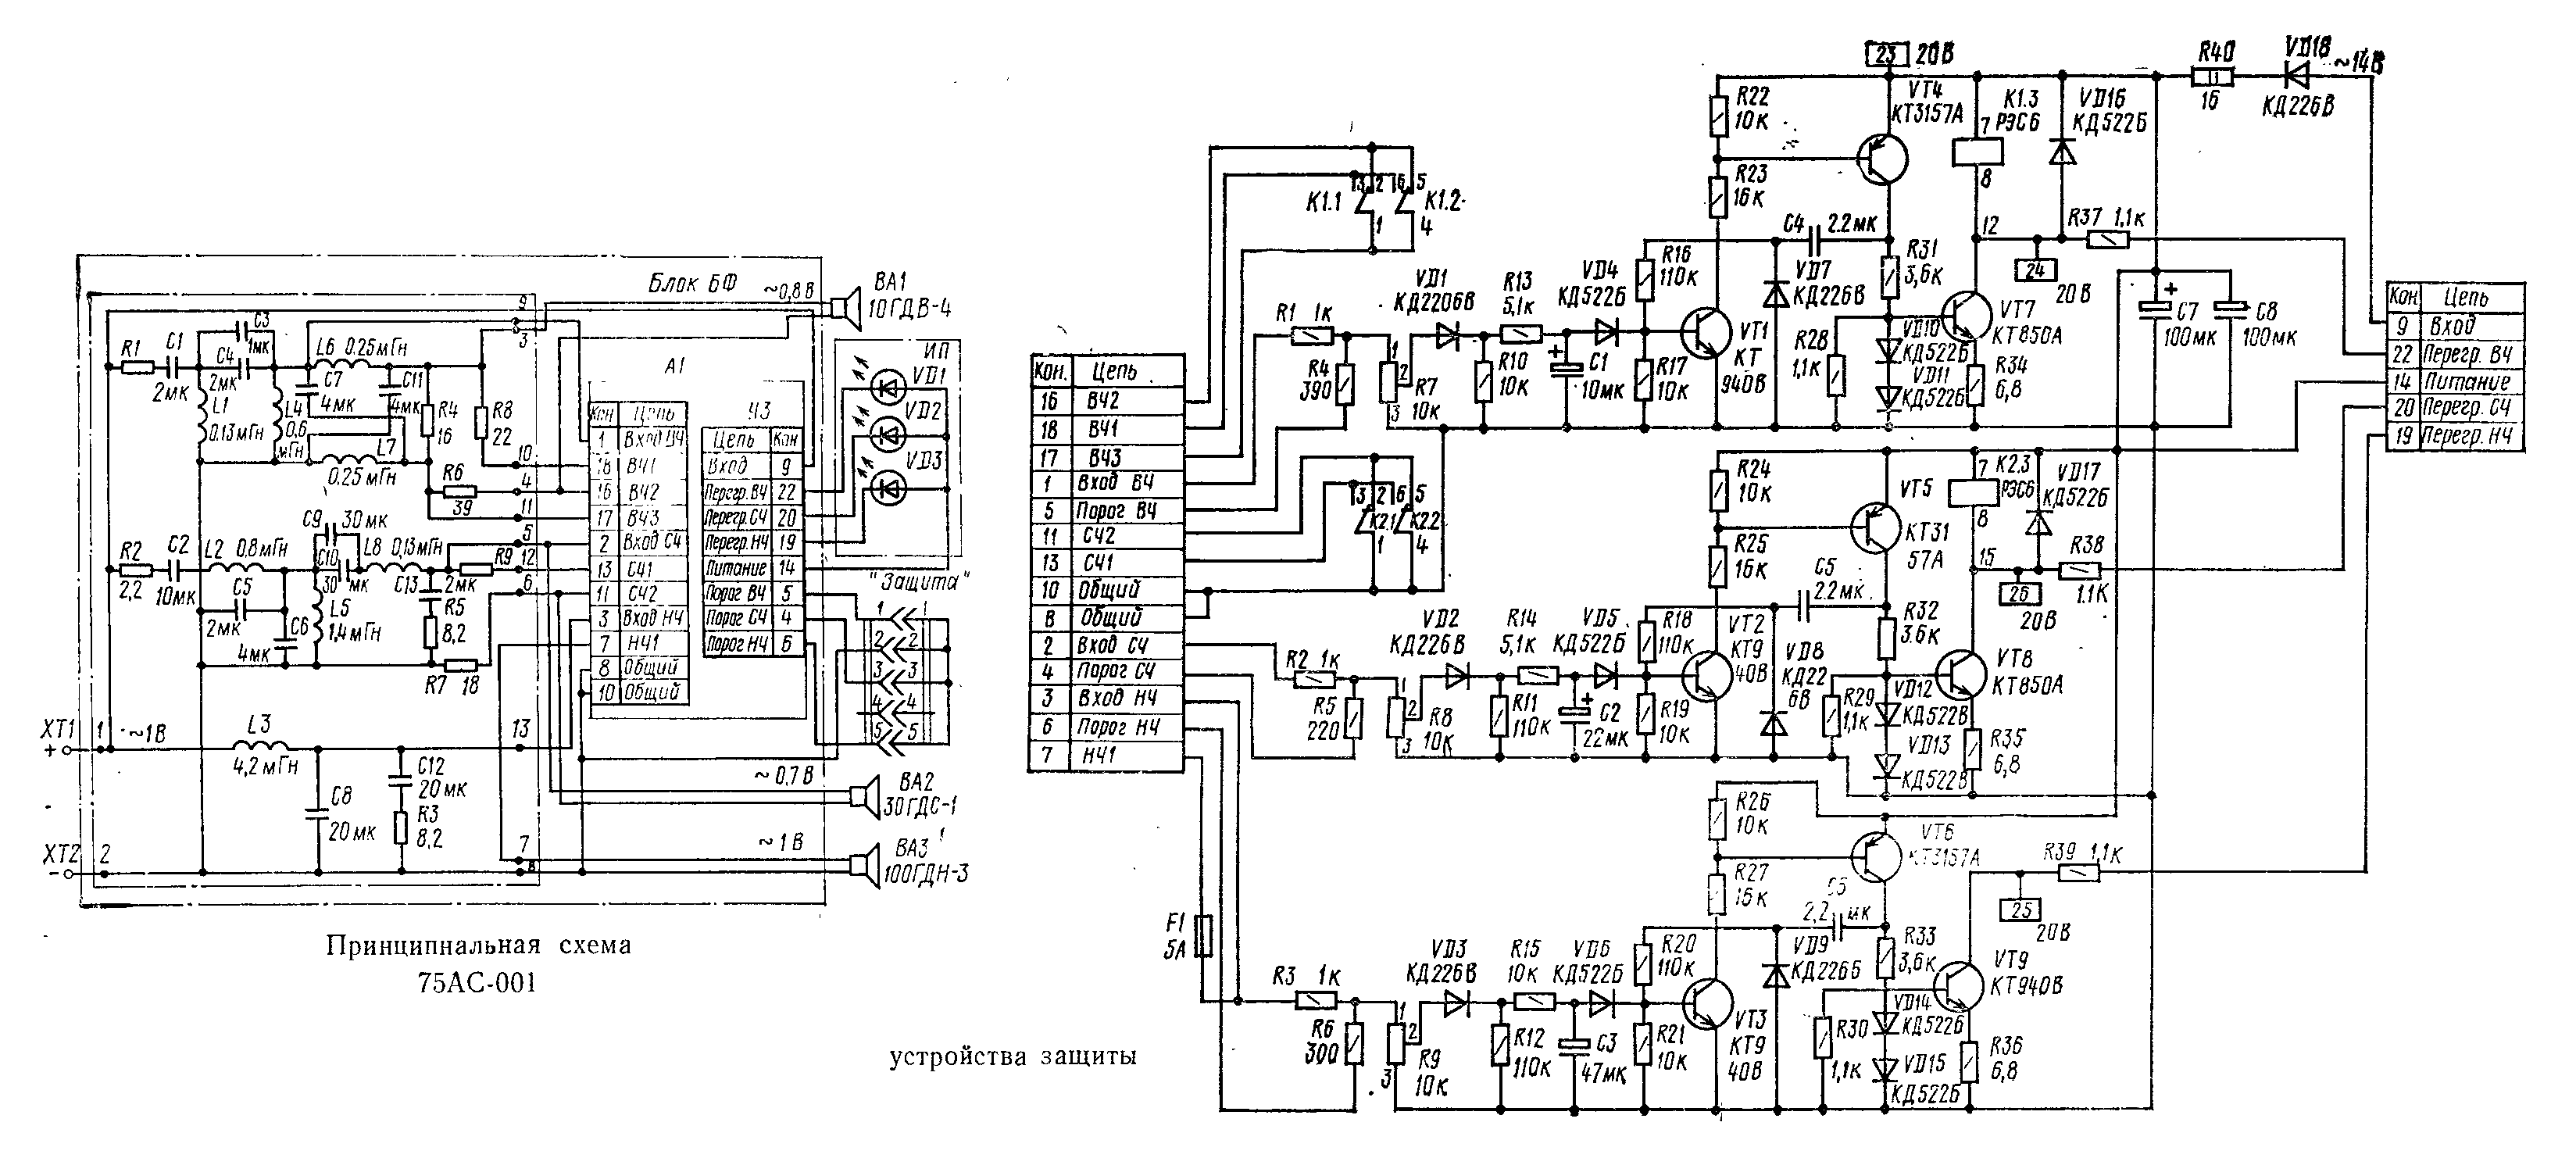 Электрическая схема усилителя на сабвуфере MYSTERY MBV-301A